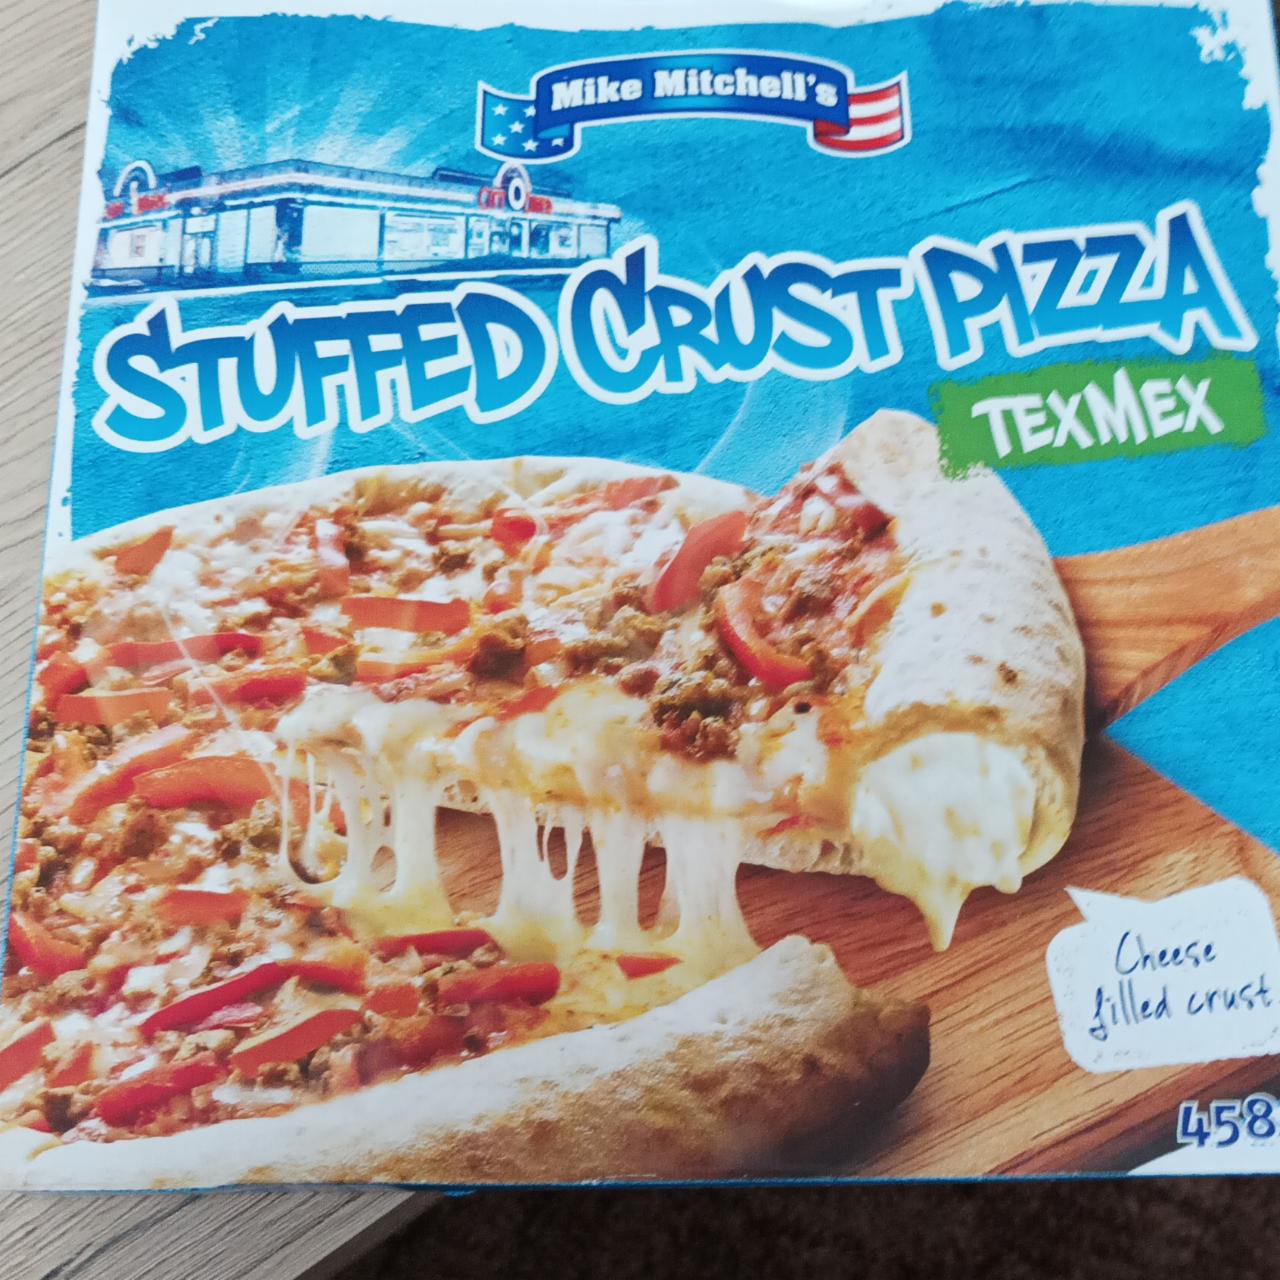 Képek - Stuffed Crust Pizza TexMex Mike Mitchell's